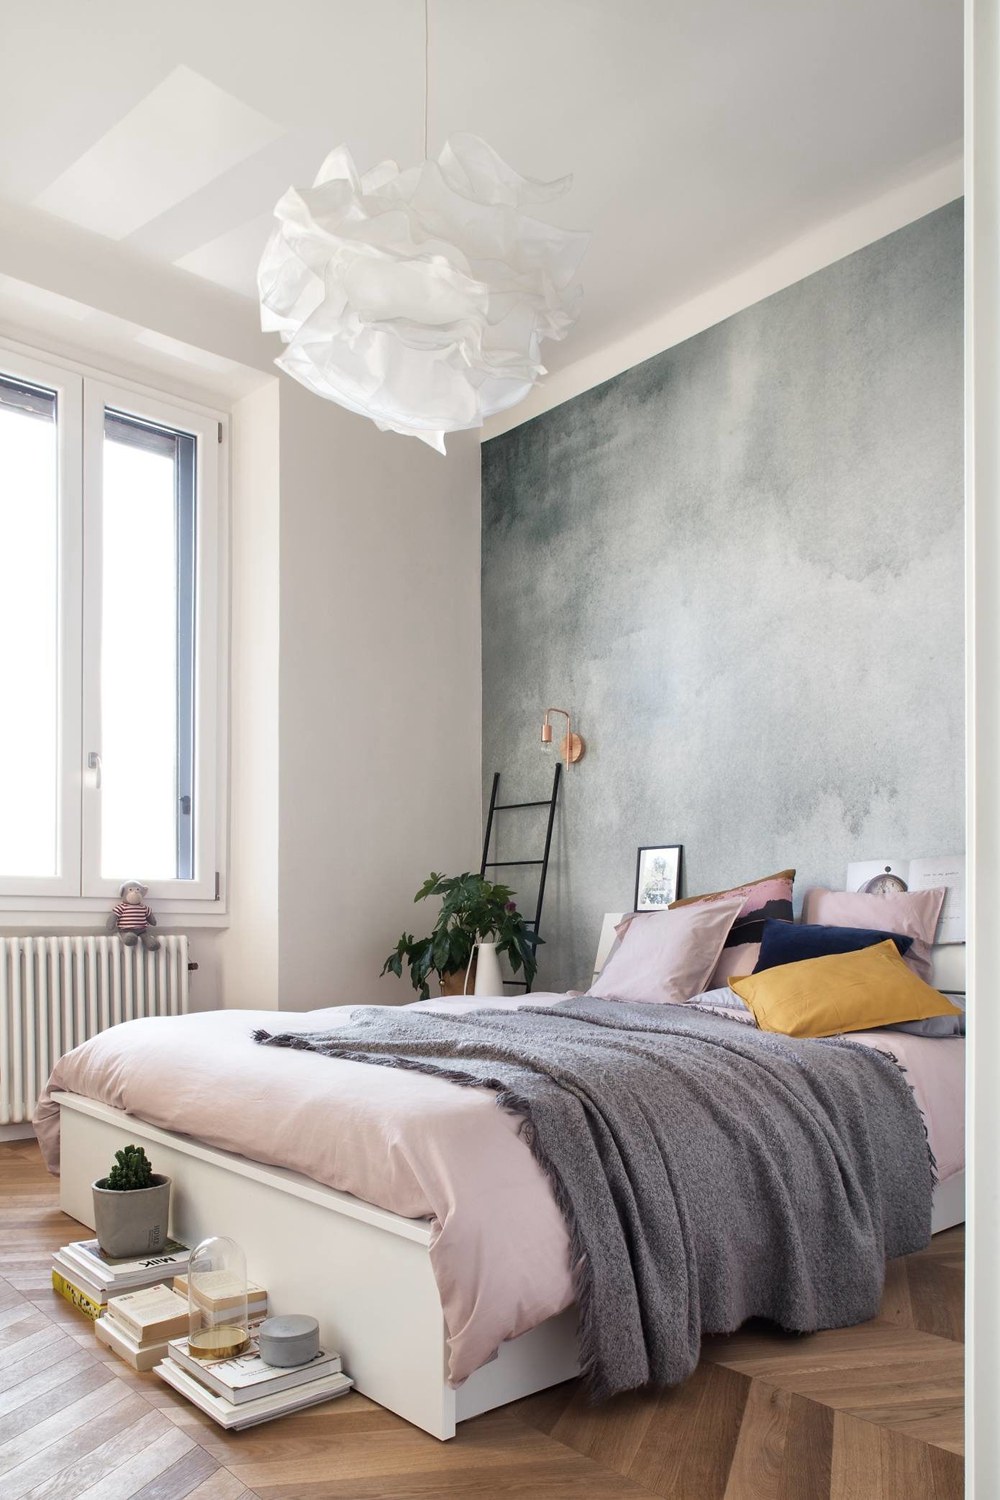 次卧背景墙营造出一个趣味的空间感，搭配粉色床品作为调色，营造出温馨舒适的情景。